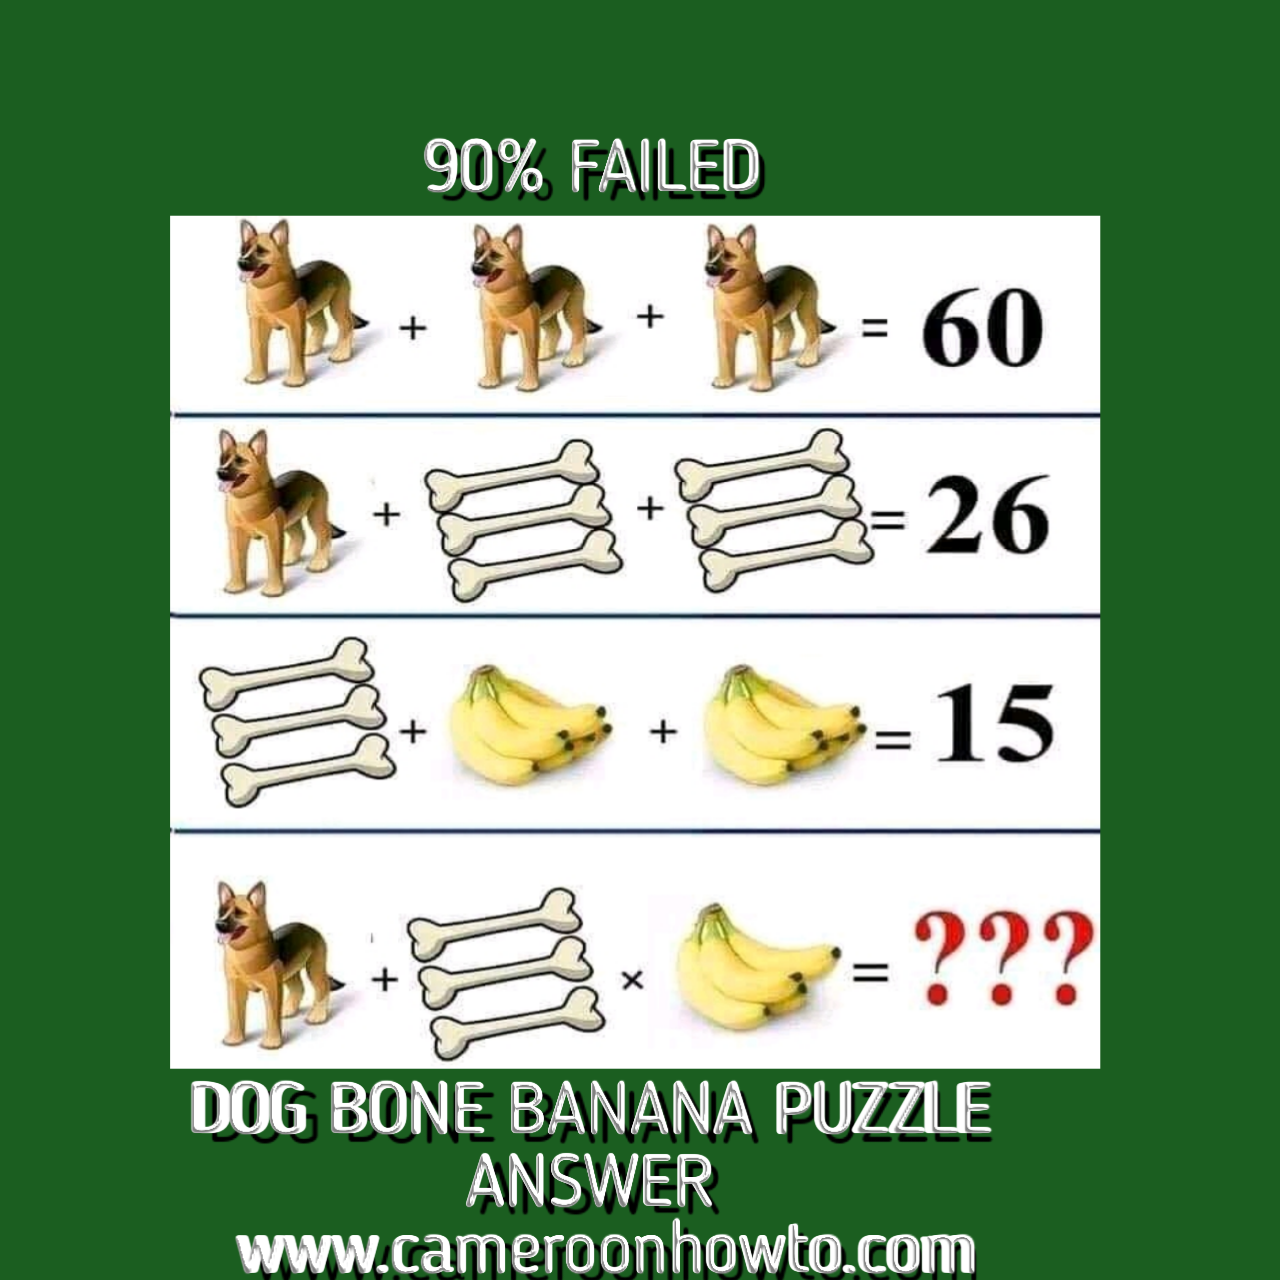 Dog Bone banana Puzzle answer